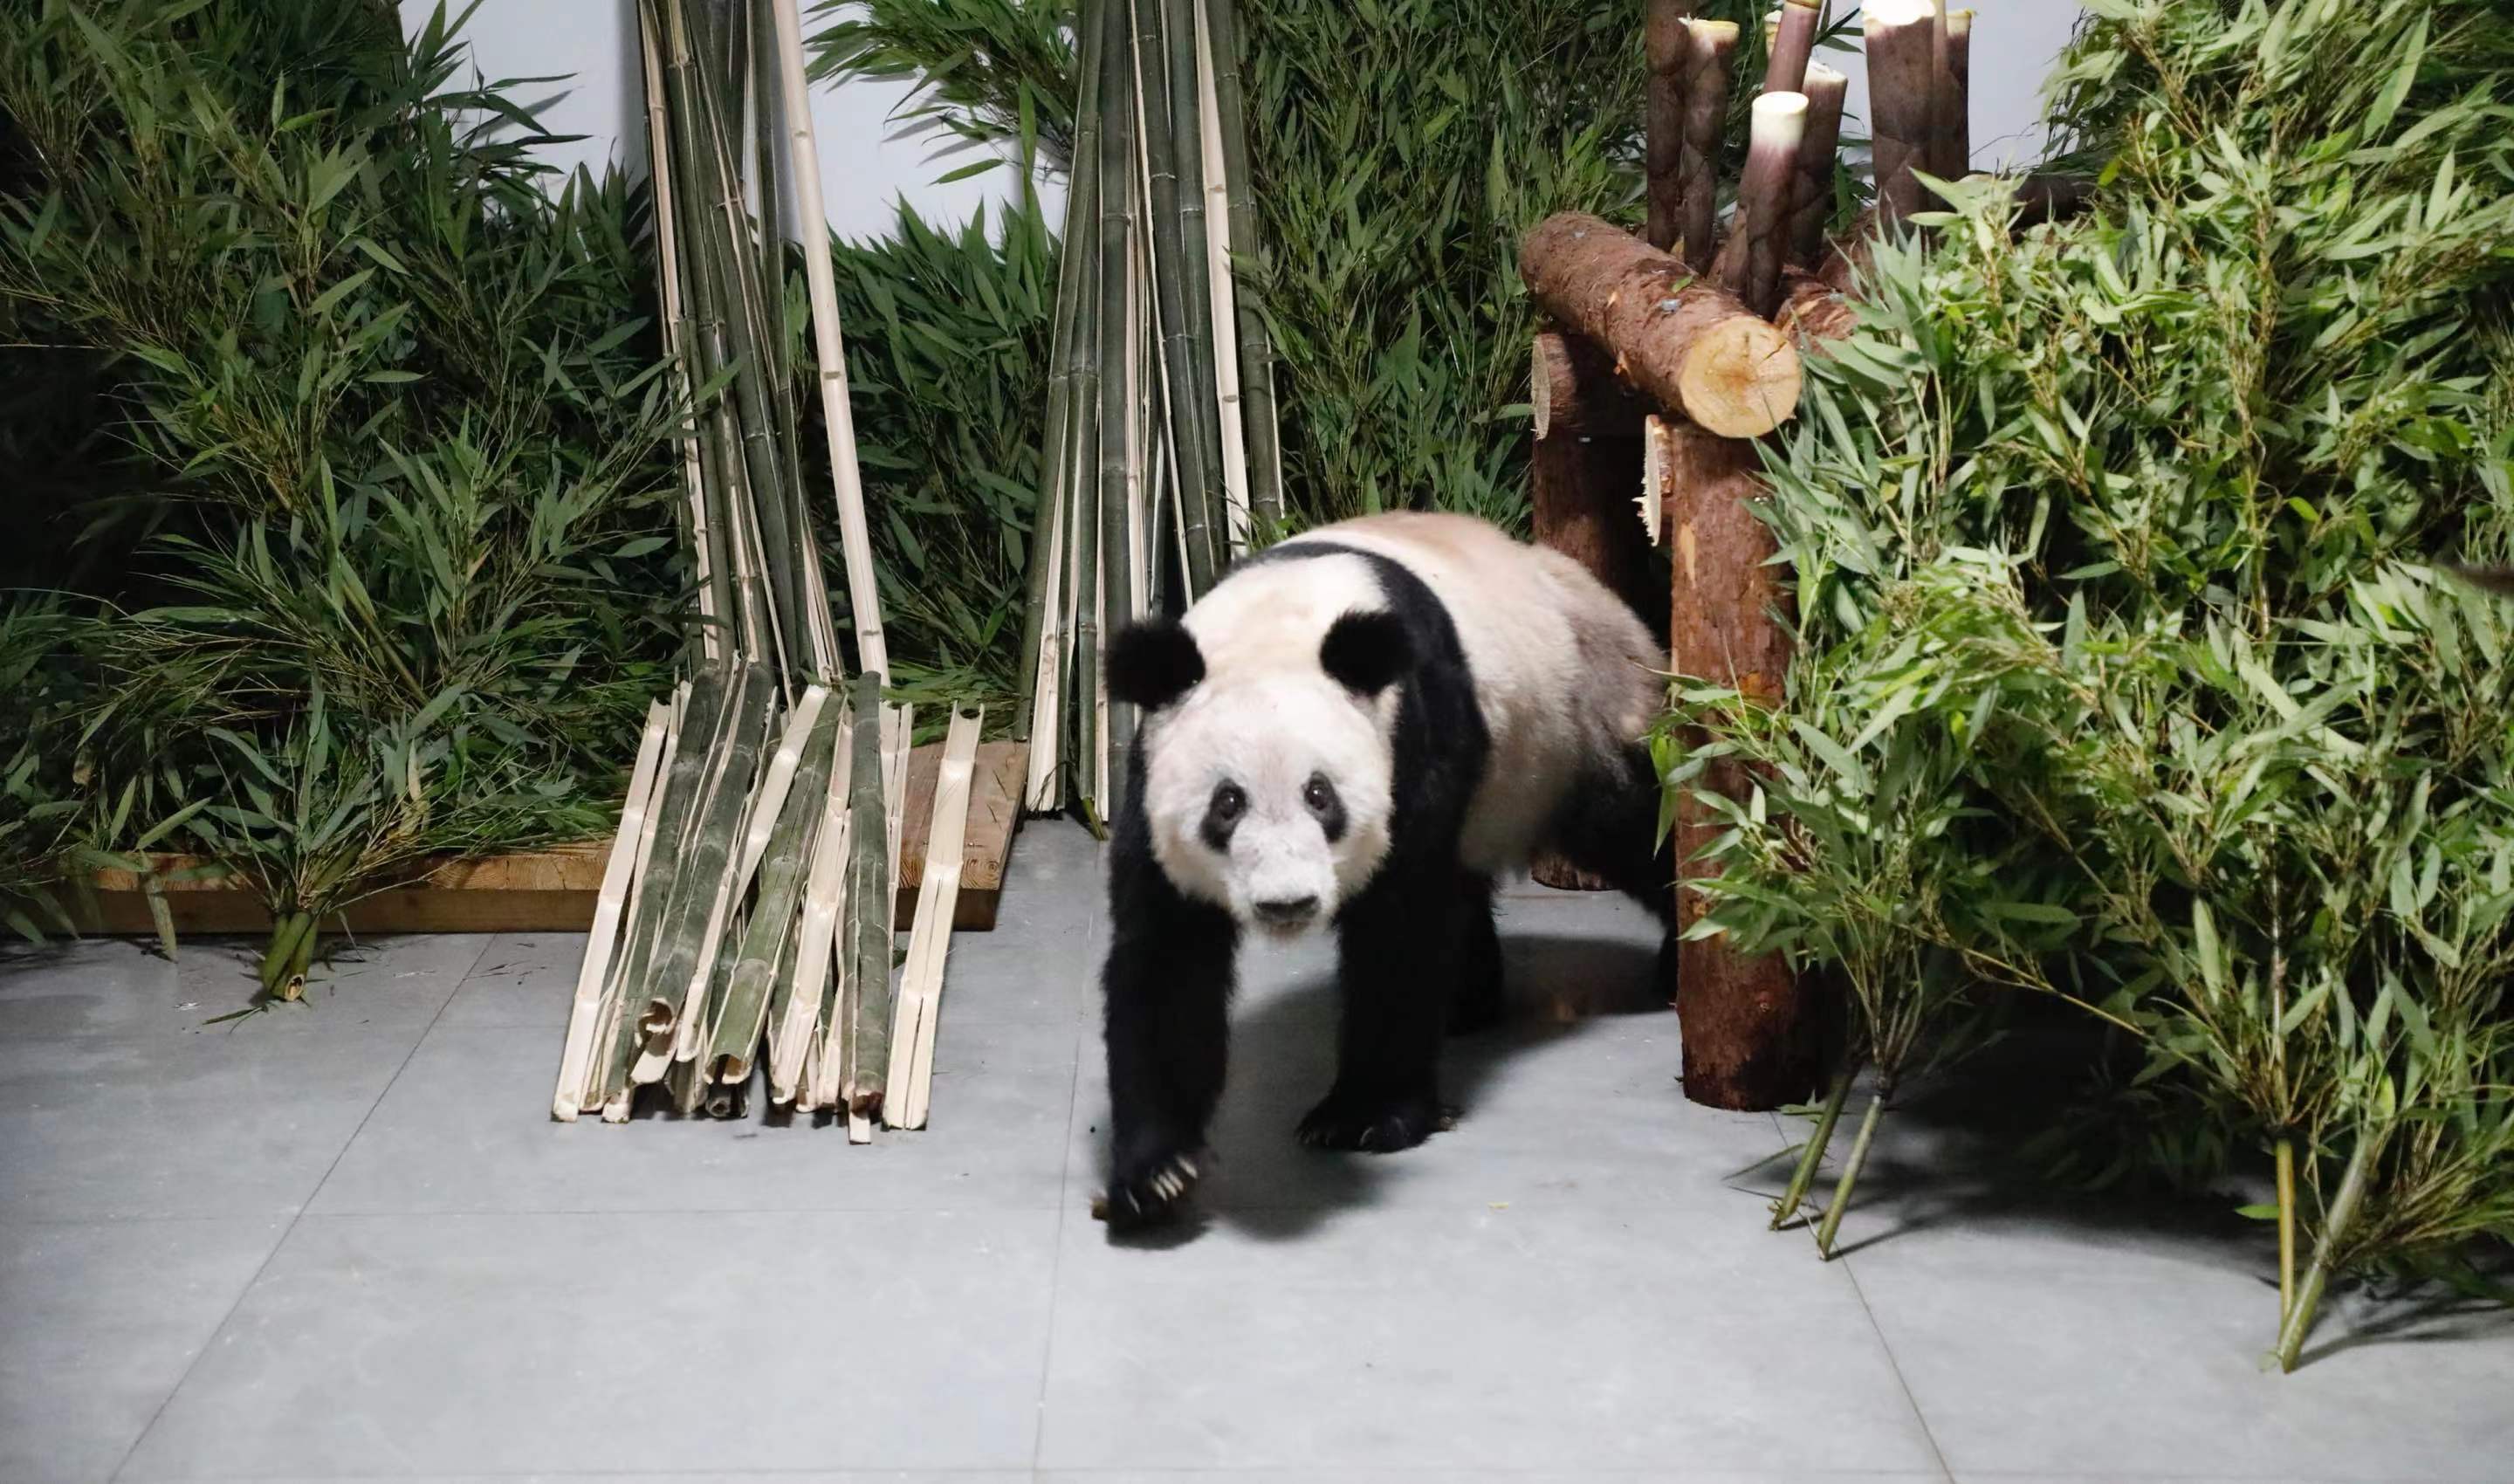 Akhirnya Panda Ya Ya Kembali ke Tempat Lahirnya di Beijing-Image-1